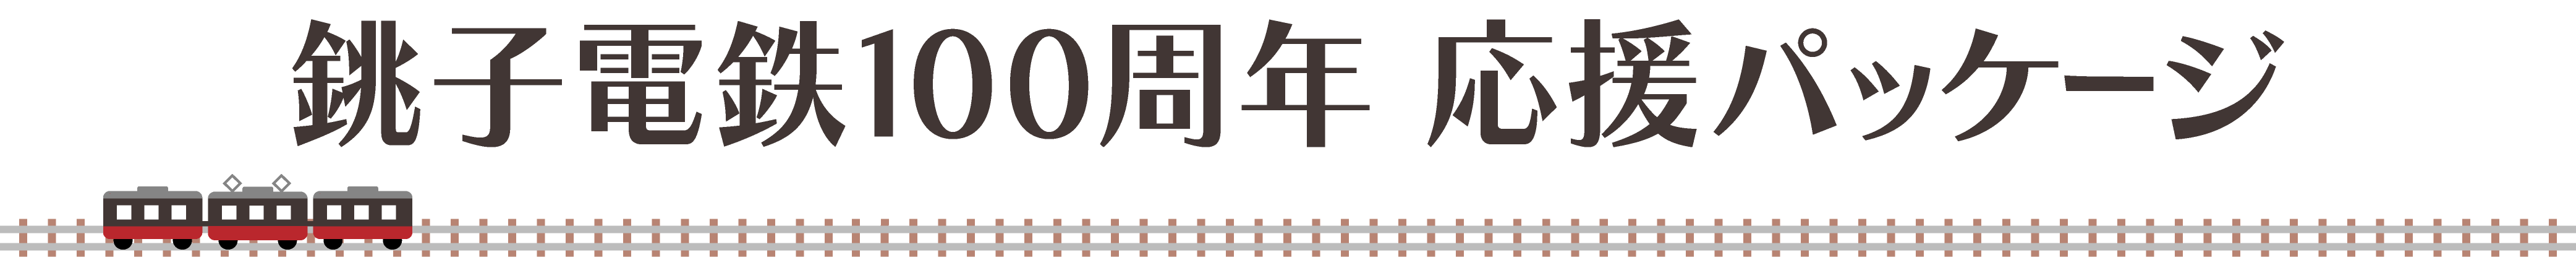 銚子電気鉄道100周年応援パッケージ